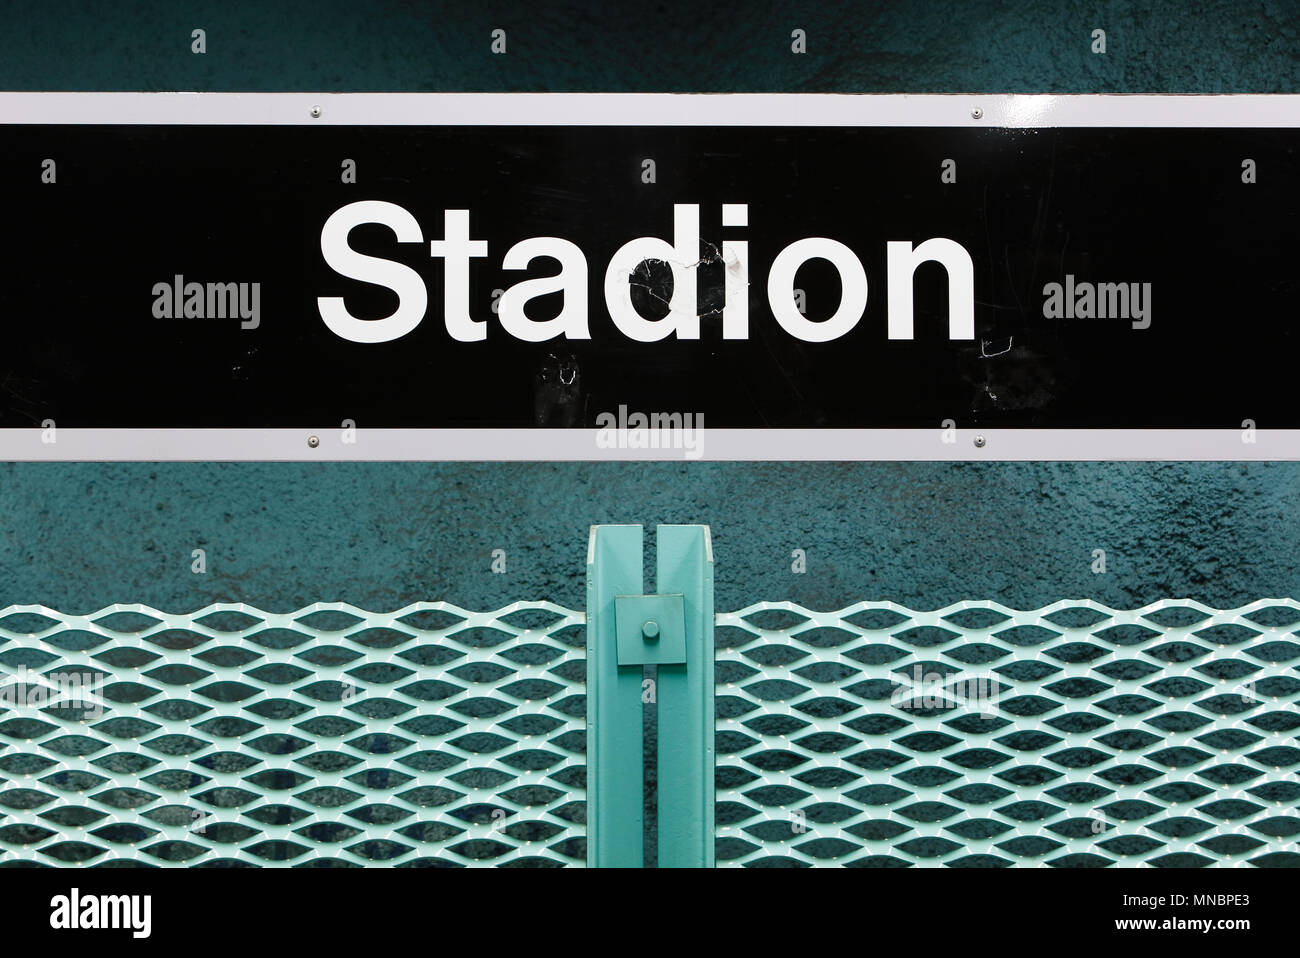 Stockholm, Sweden - December 12, 2013: Close-up of the Stockholm metro underground  station Stadion signage at the platform. Stock Photo